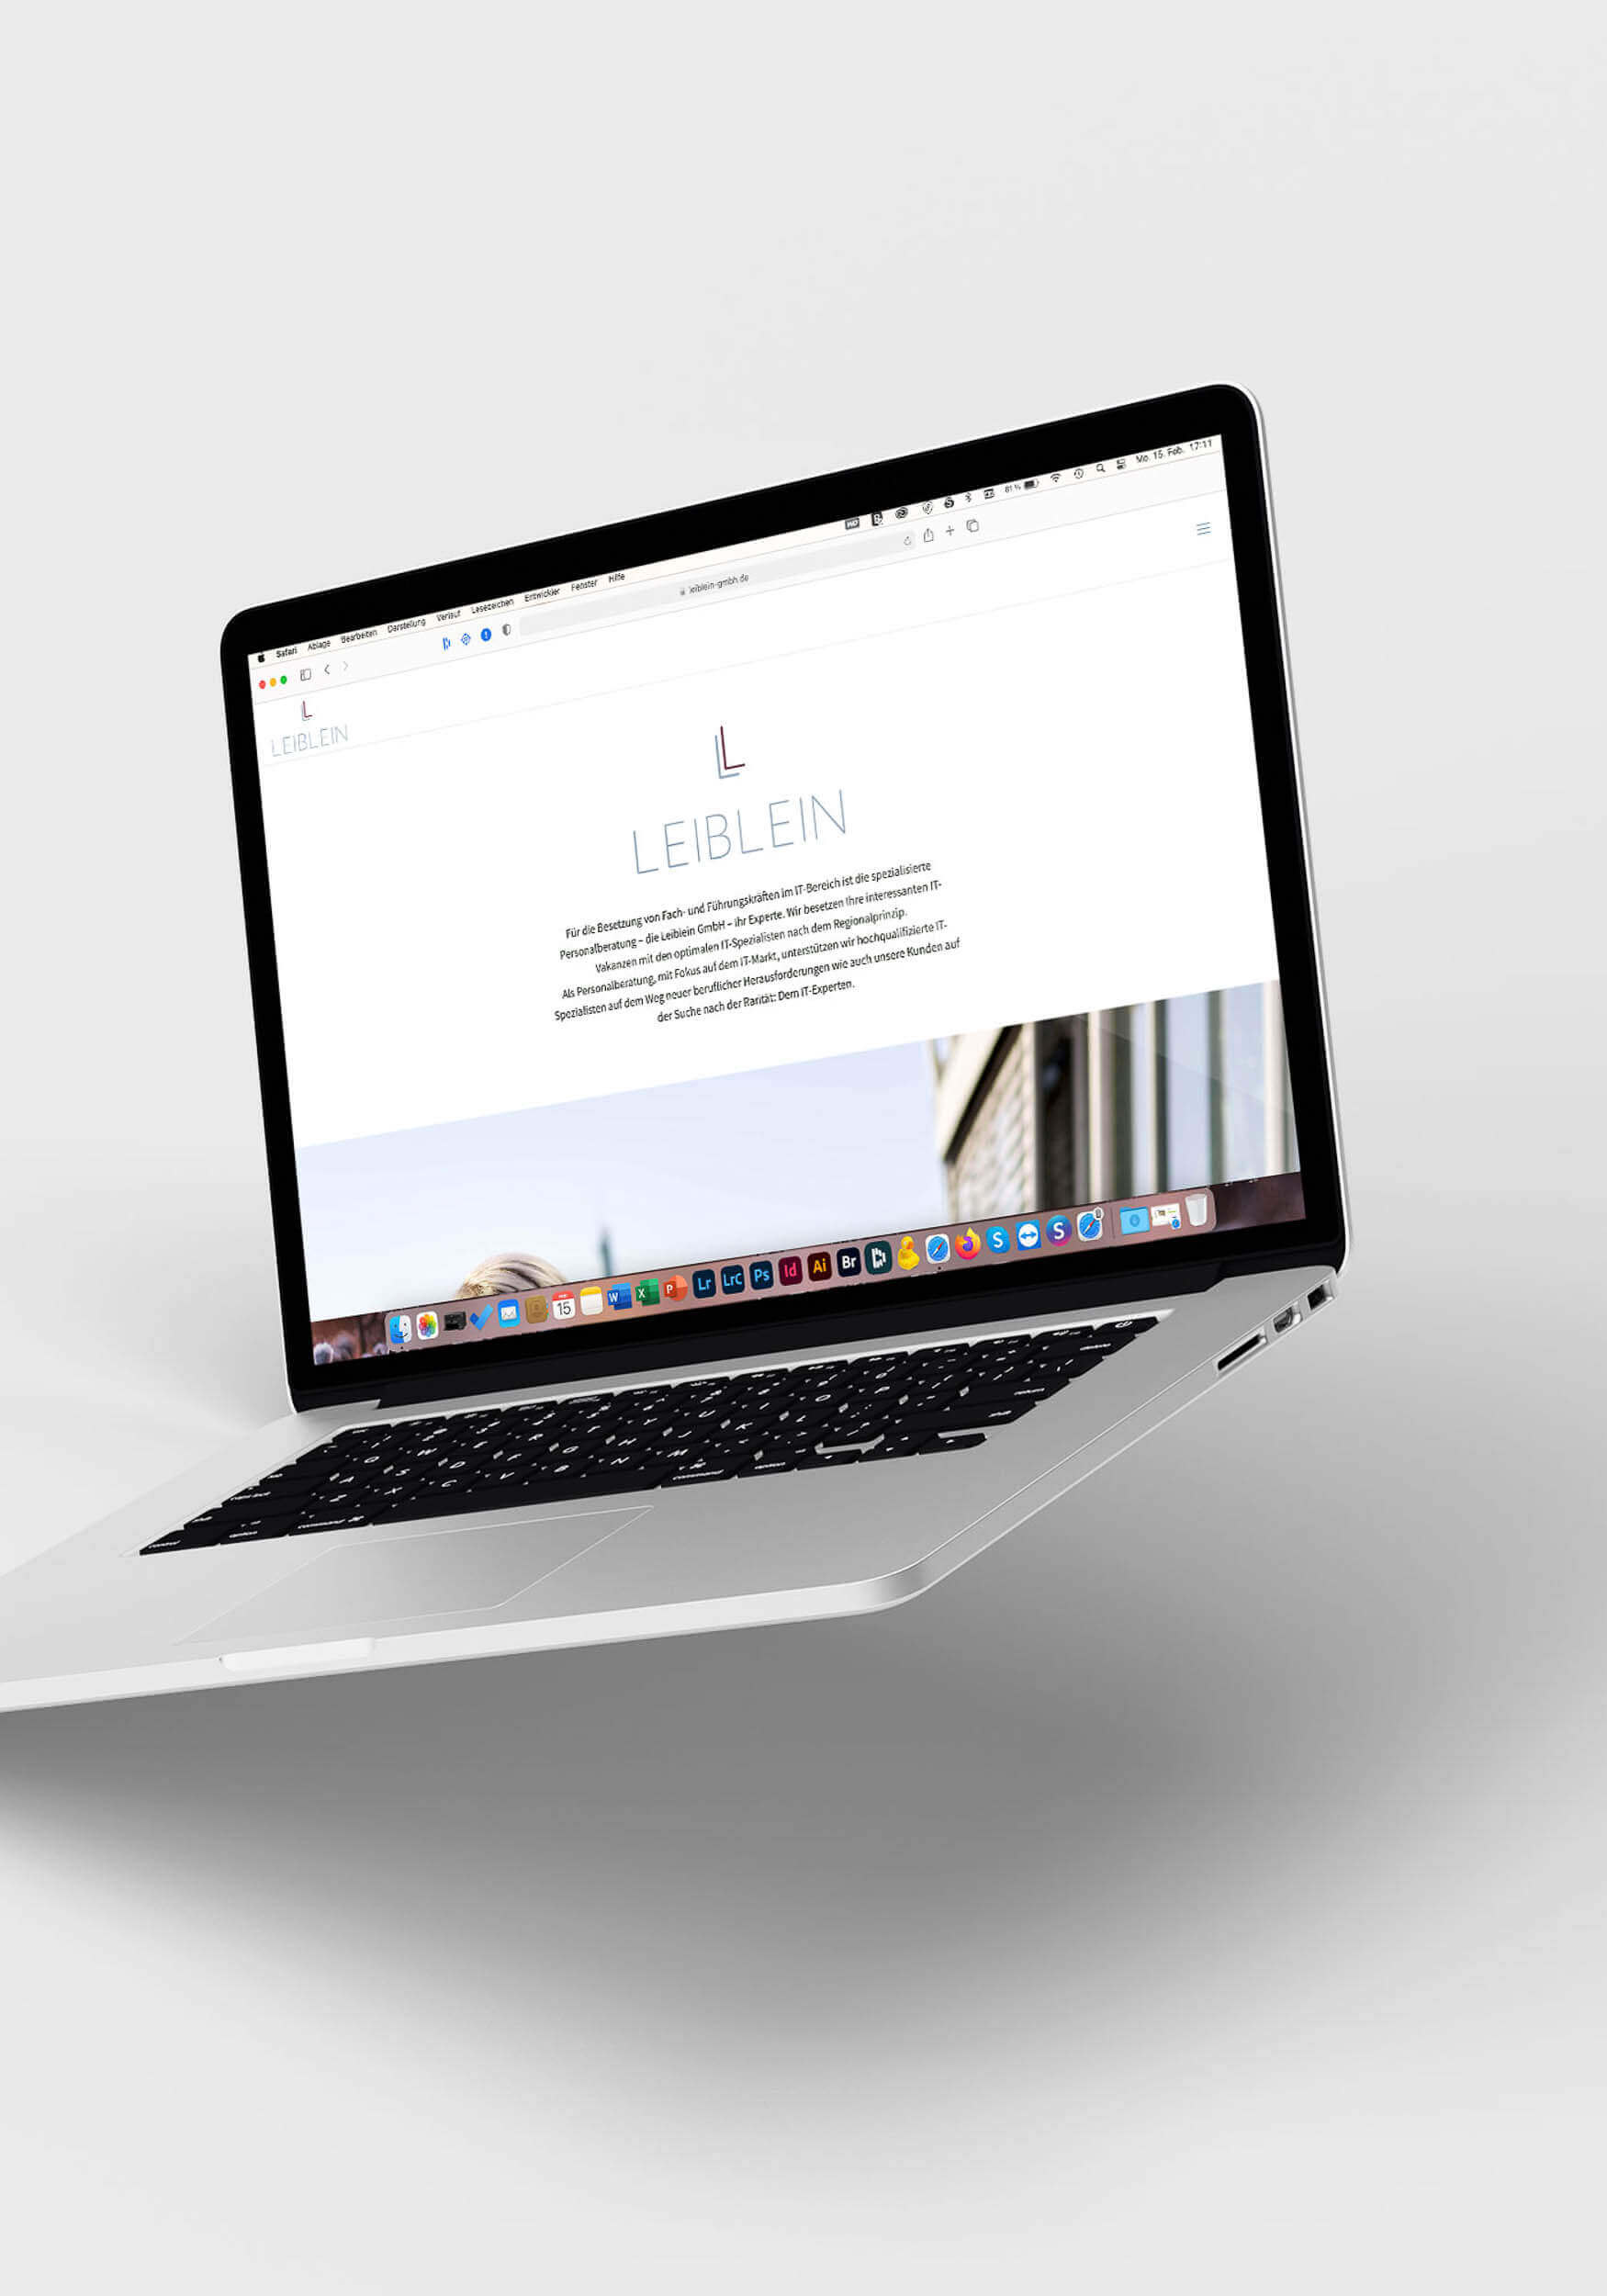 Die Website der Leiblein GmbH auf einem Laptop